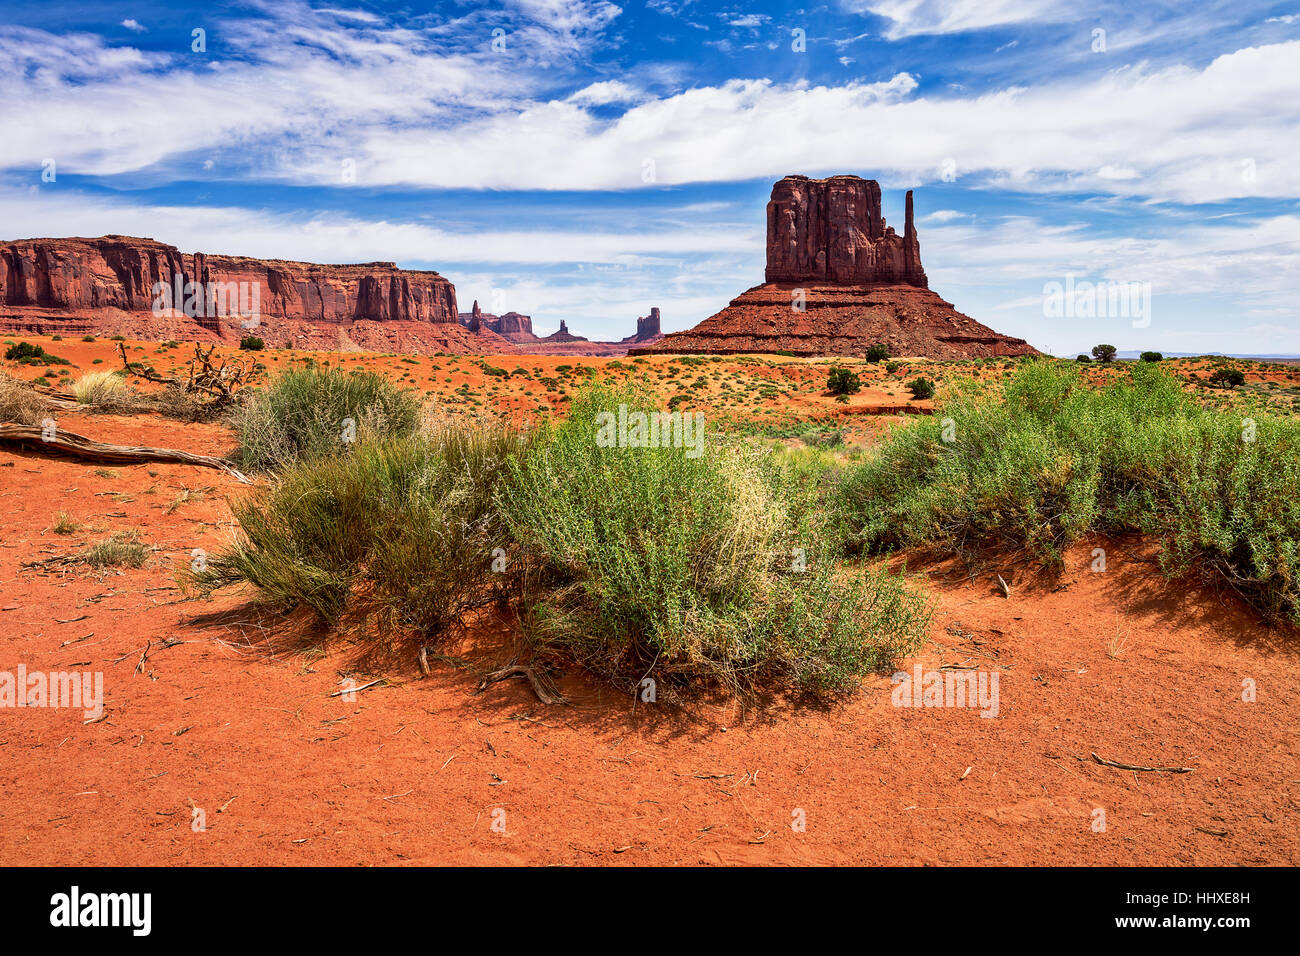 Monument Valley Navajo Tribal Park, Arizona, États-Unis paysage du sud-ouest du désert Banque D'Images